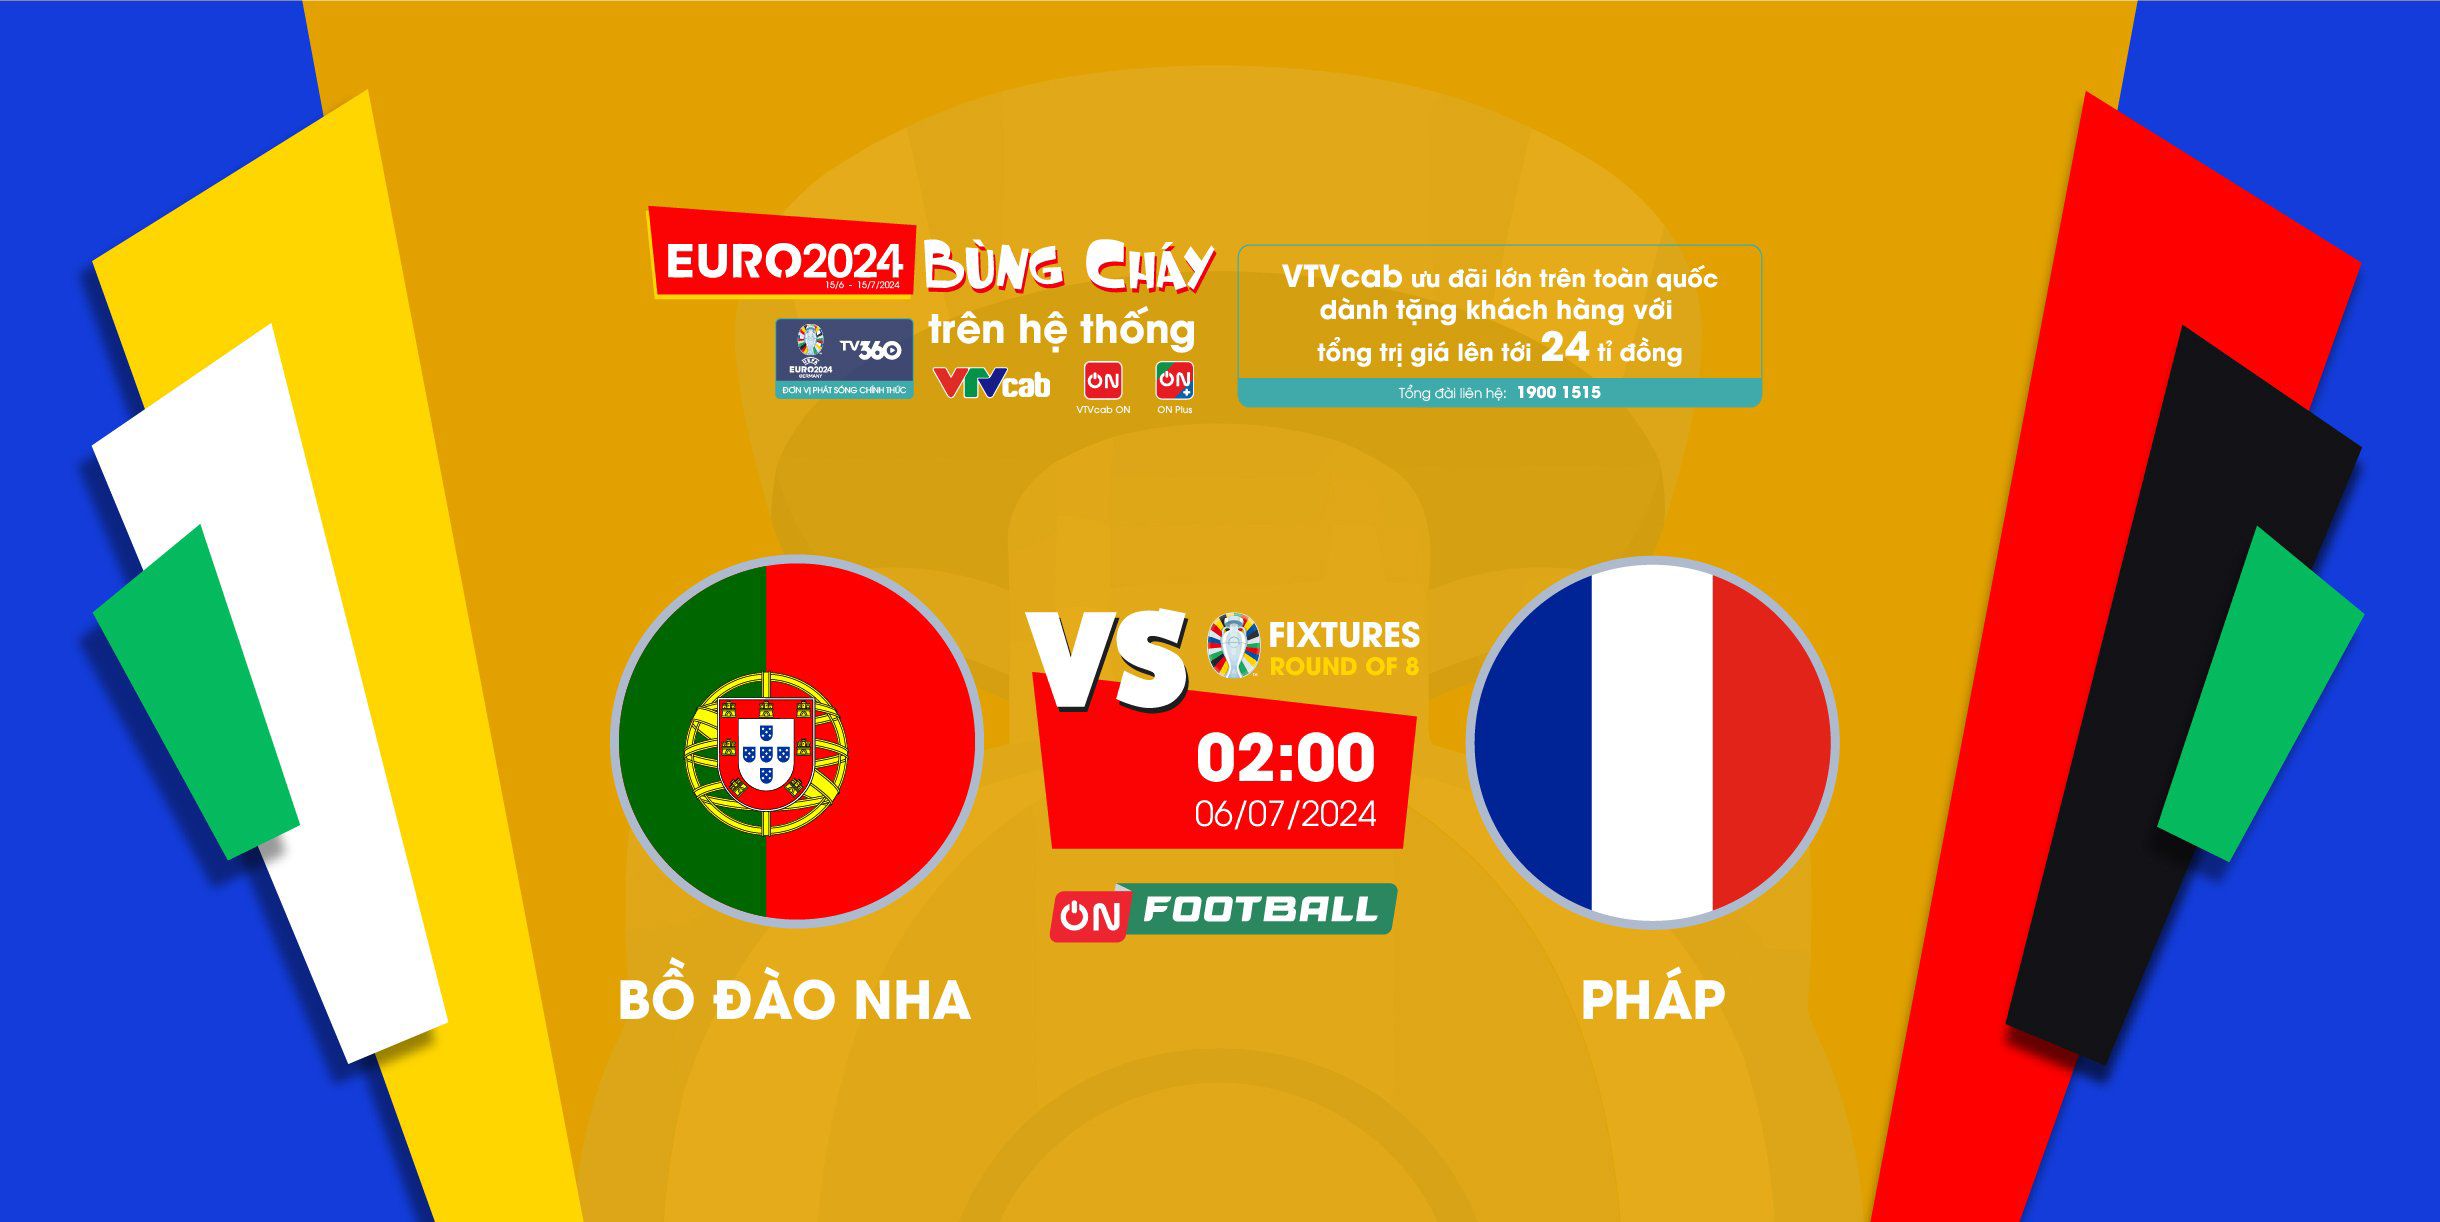 4 trận tứ kết Euro 2024: Tranh tài đỉnh cao, xem trực tiếp trên VTVcab - 2